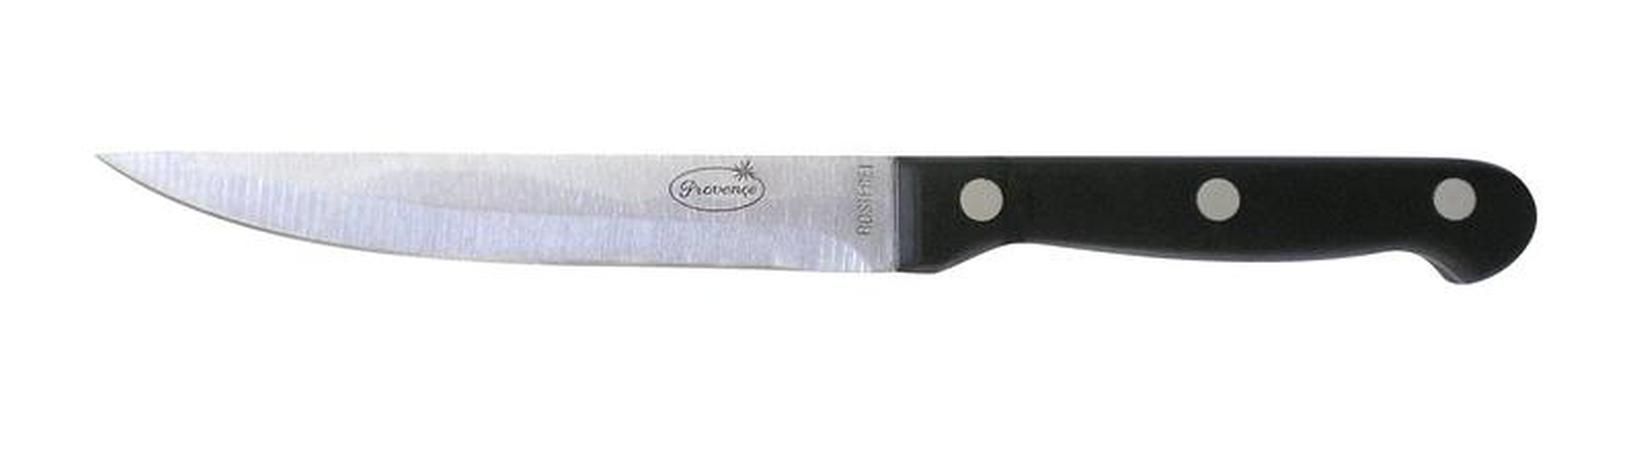 Provence Nůž univerzální, 22, 5 x 1, 9 cm - Kitos.cz